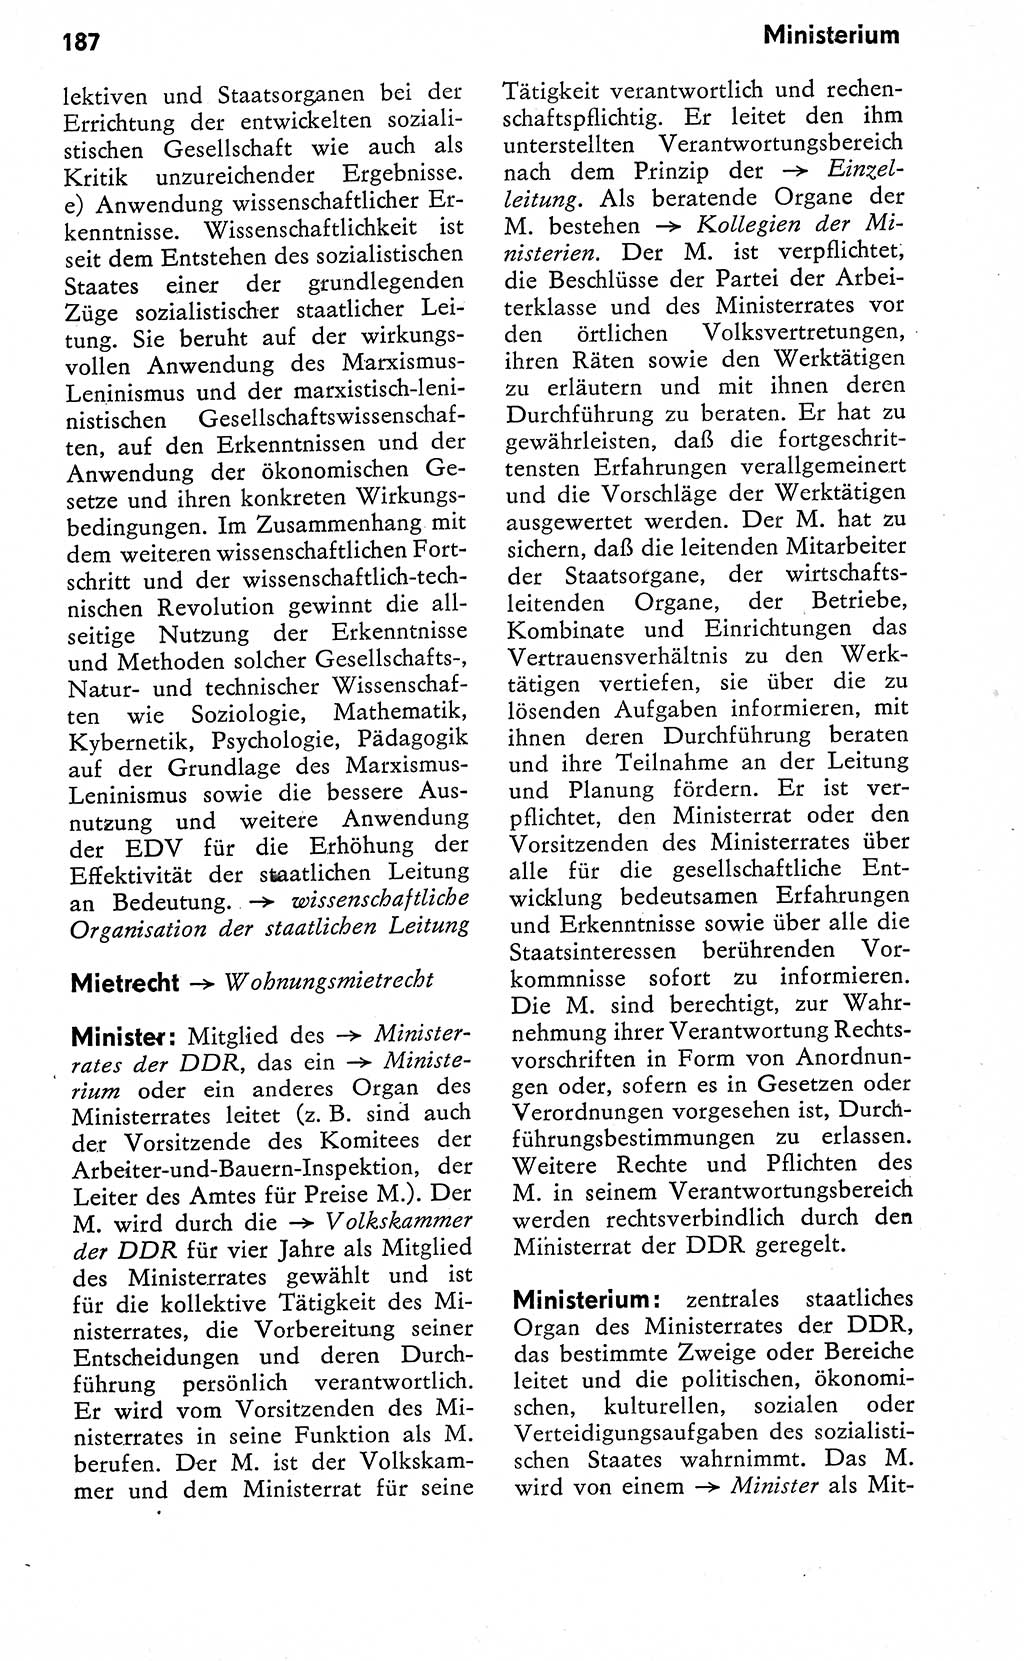 Wörterbuch zum sozialistischen Staat [Deutsche Demokratische Republik (DDR)] 1974, Seite 187 (Wb. soz. St. DDR 1974, S. 187)